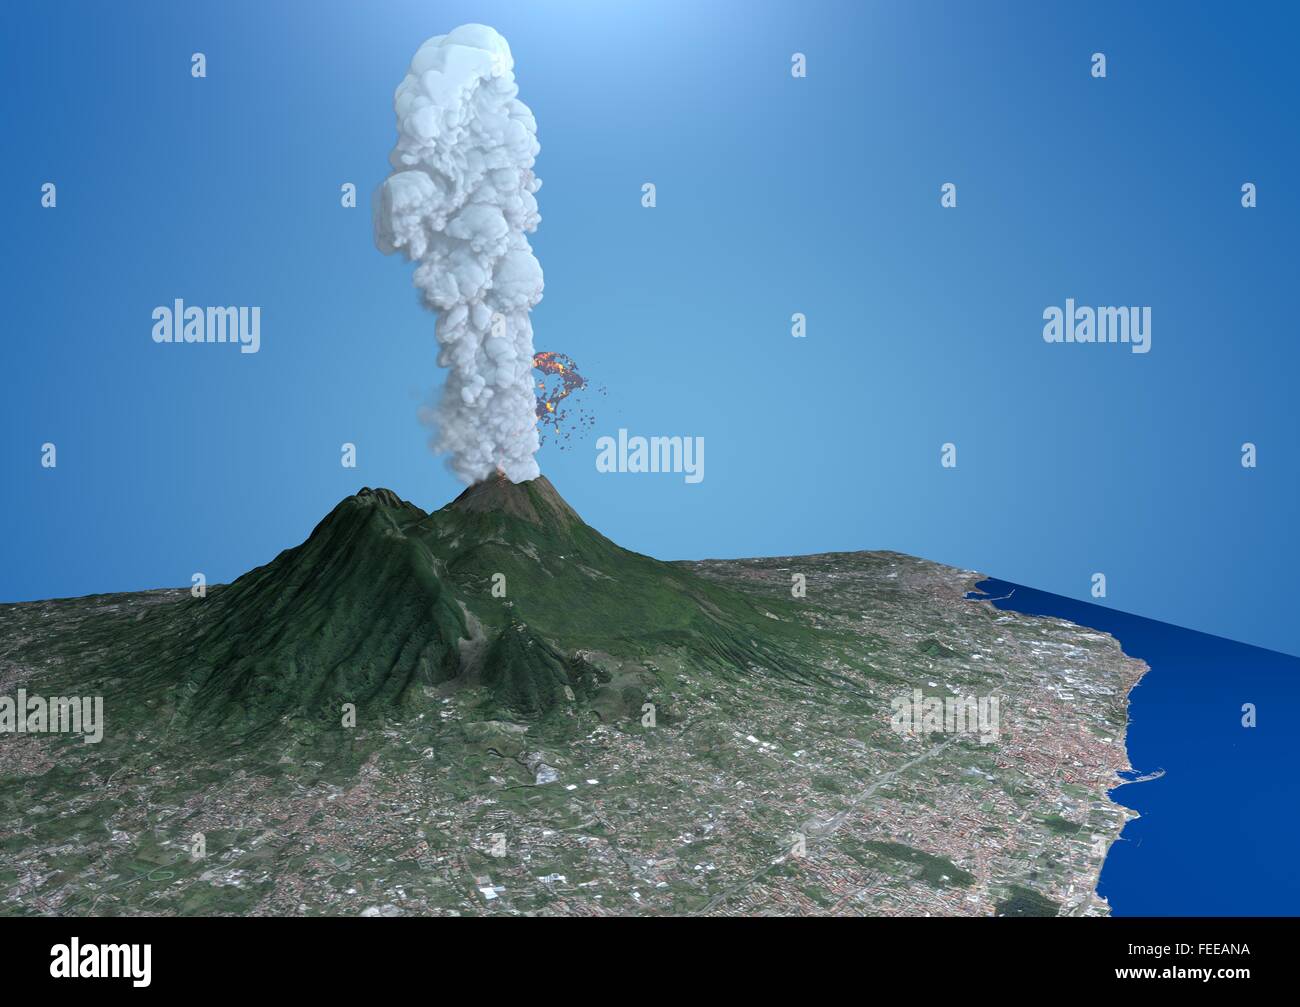 Vue du volcan Vésuve, éruption, 3d, Italie Campania Banque D'Images